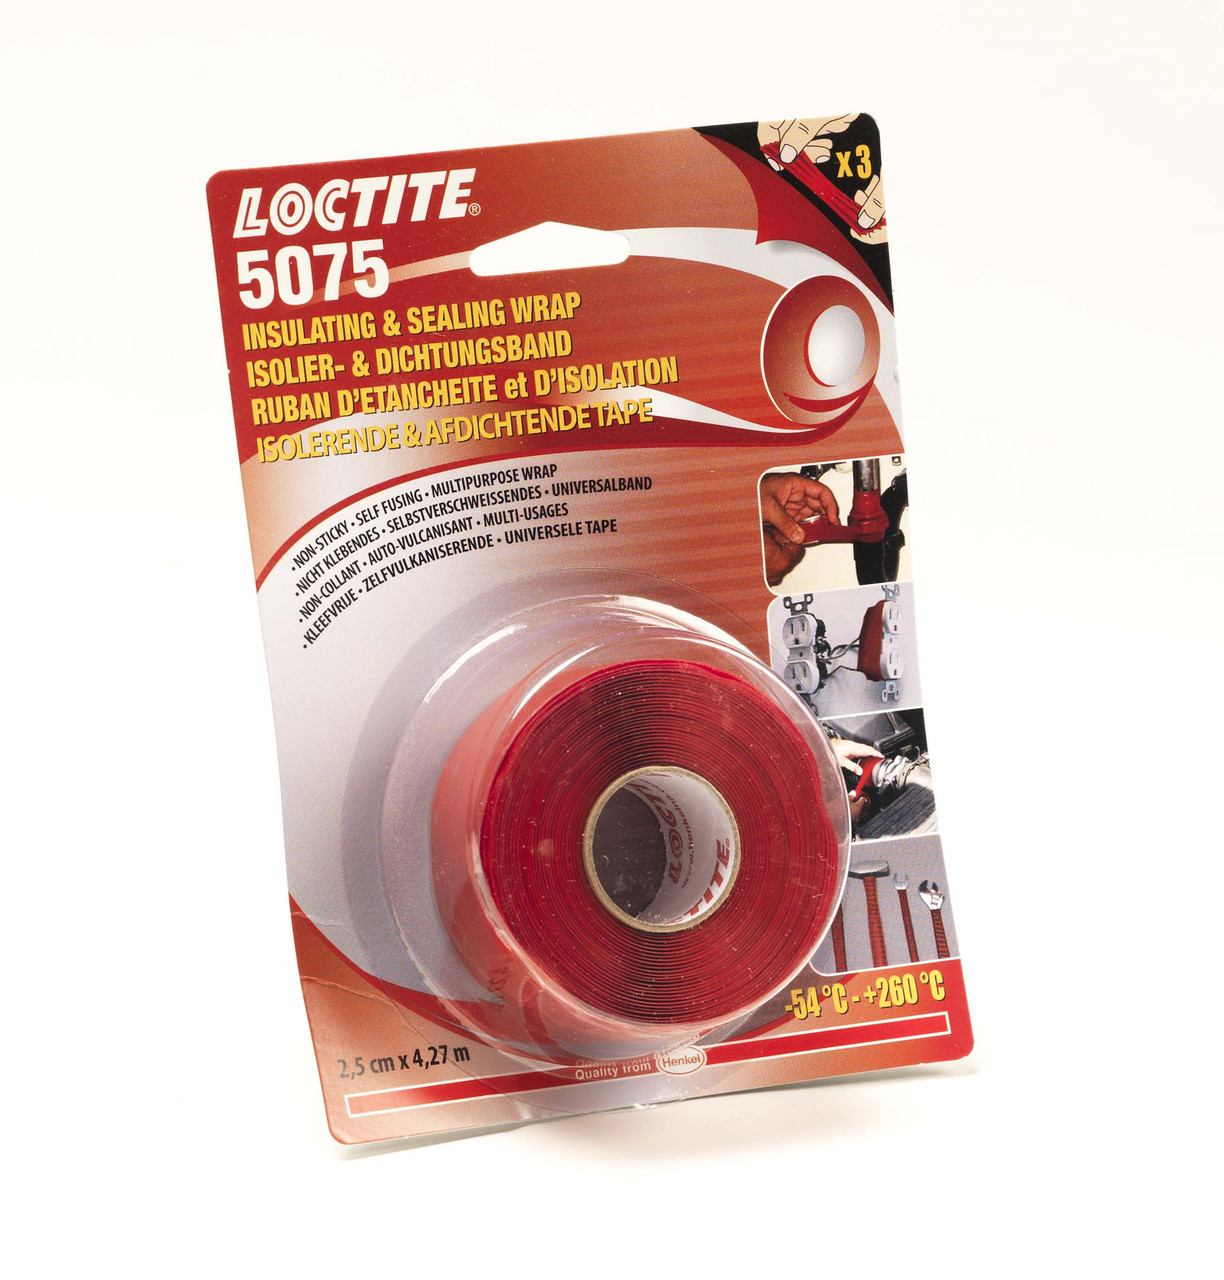 Лента изоляционная Loctite 5075 универсальная, силиконовая не прилипающая 4,27м